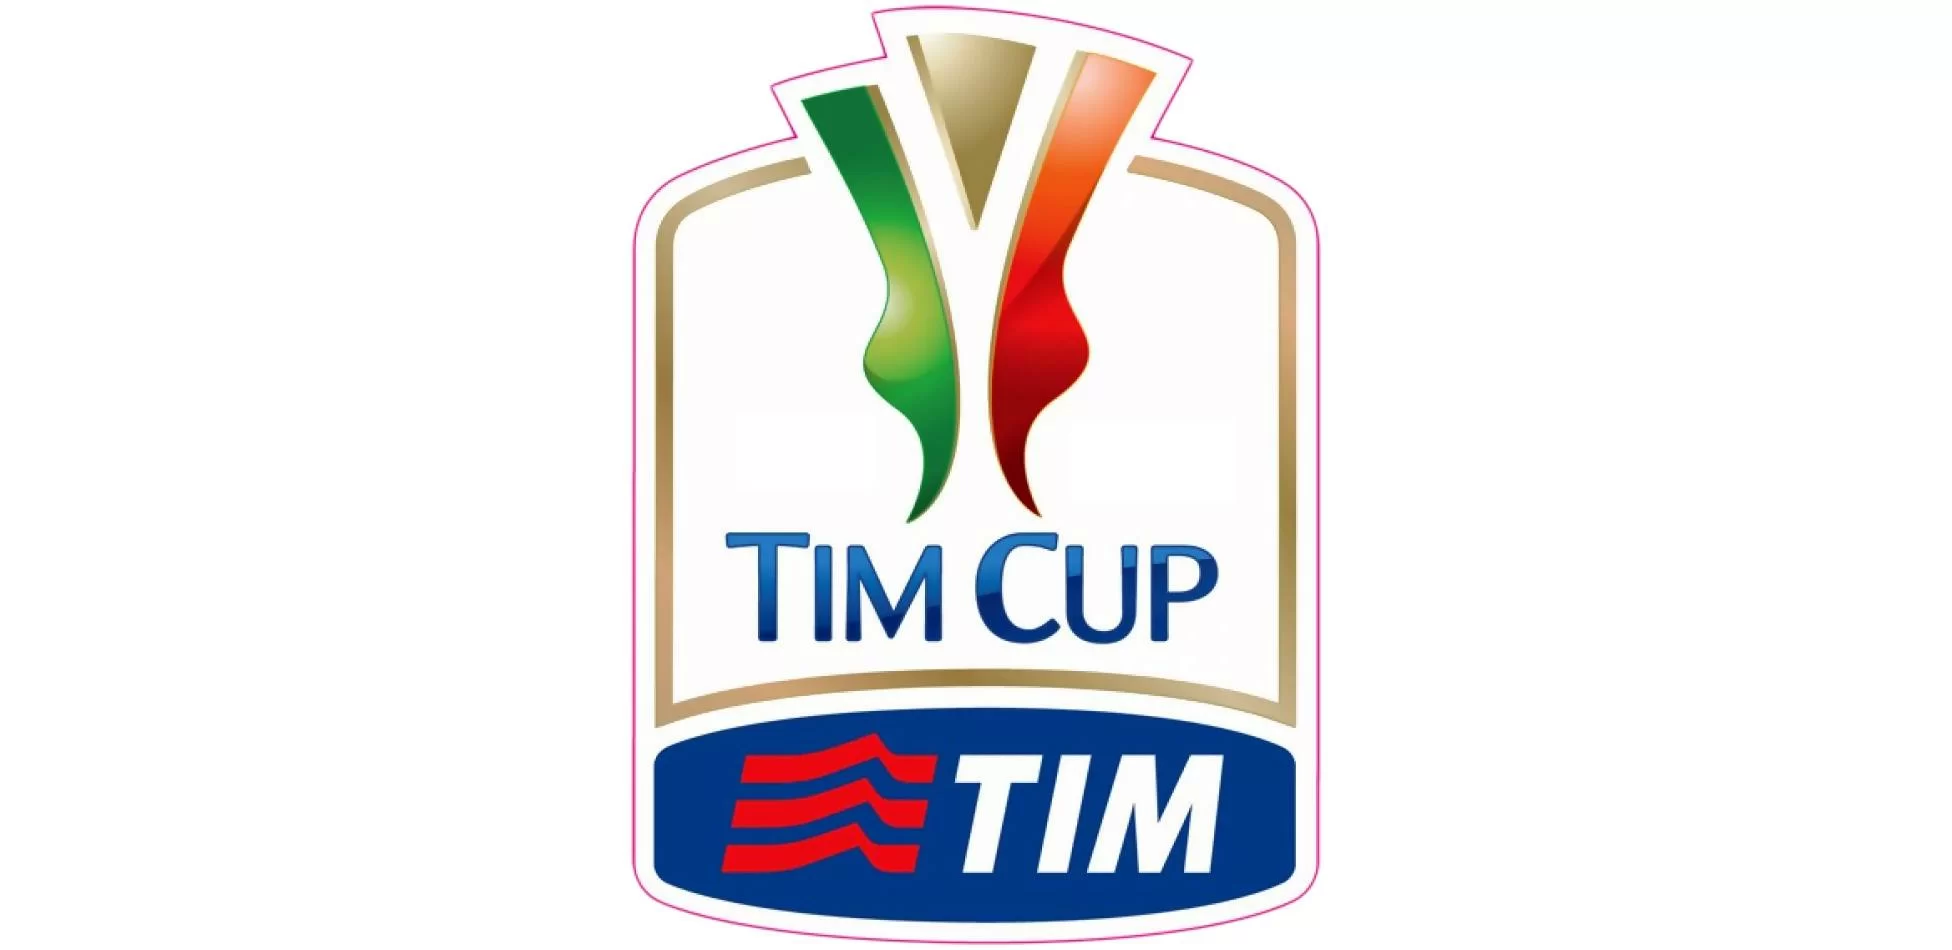 Coppa Italia, ecco le due possibili avversarie del Milan